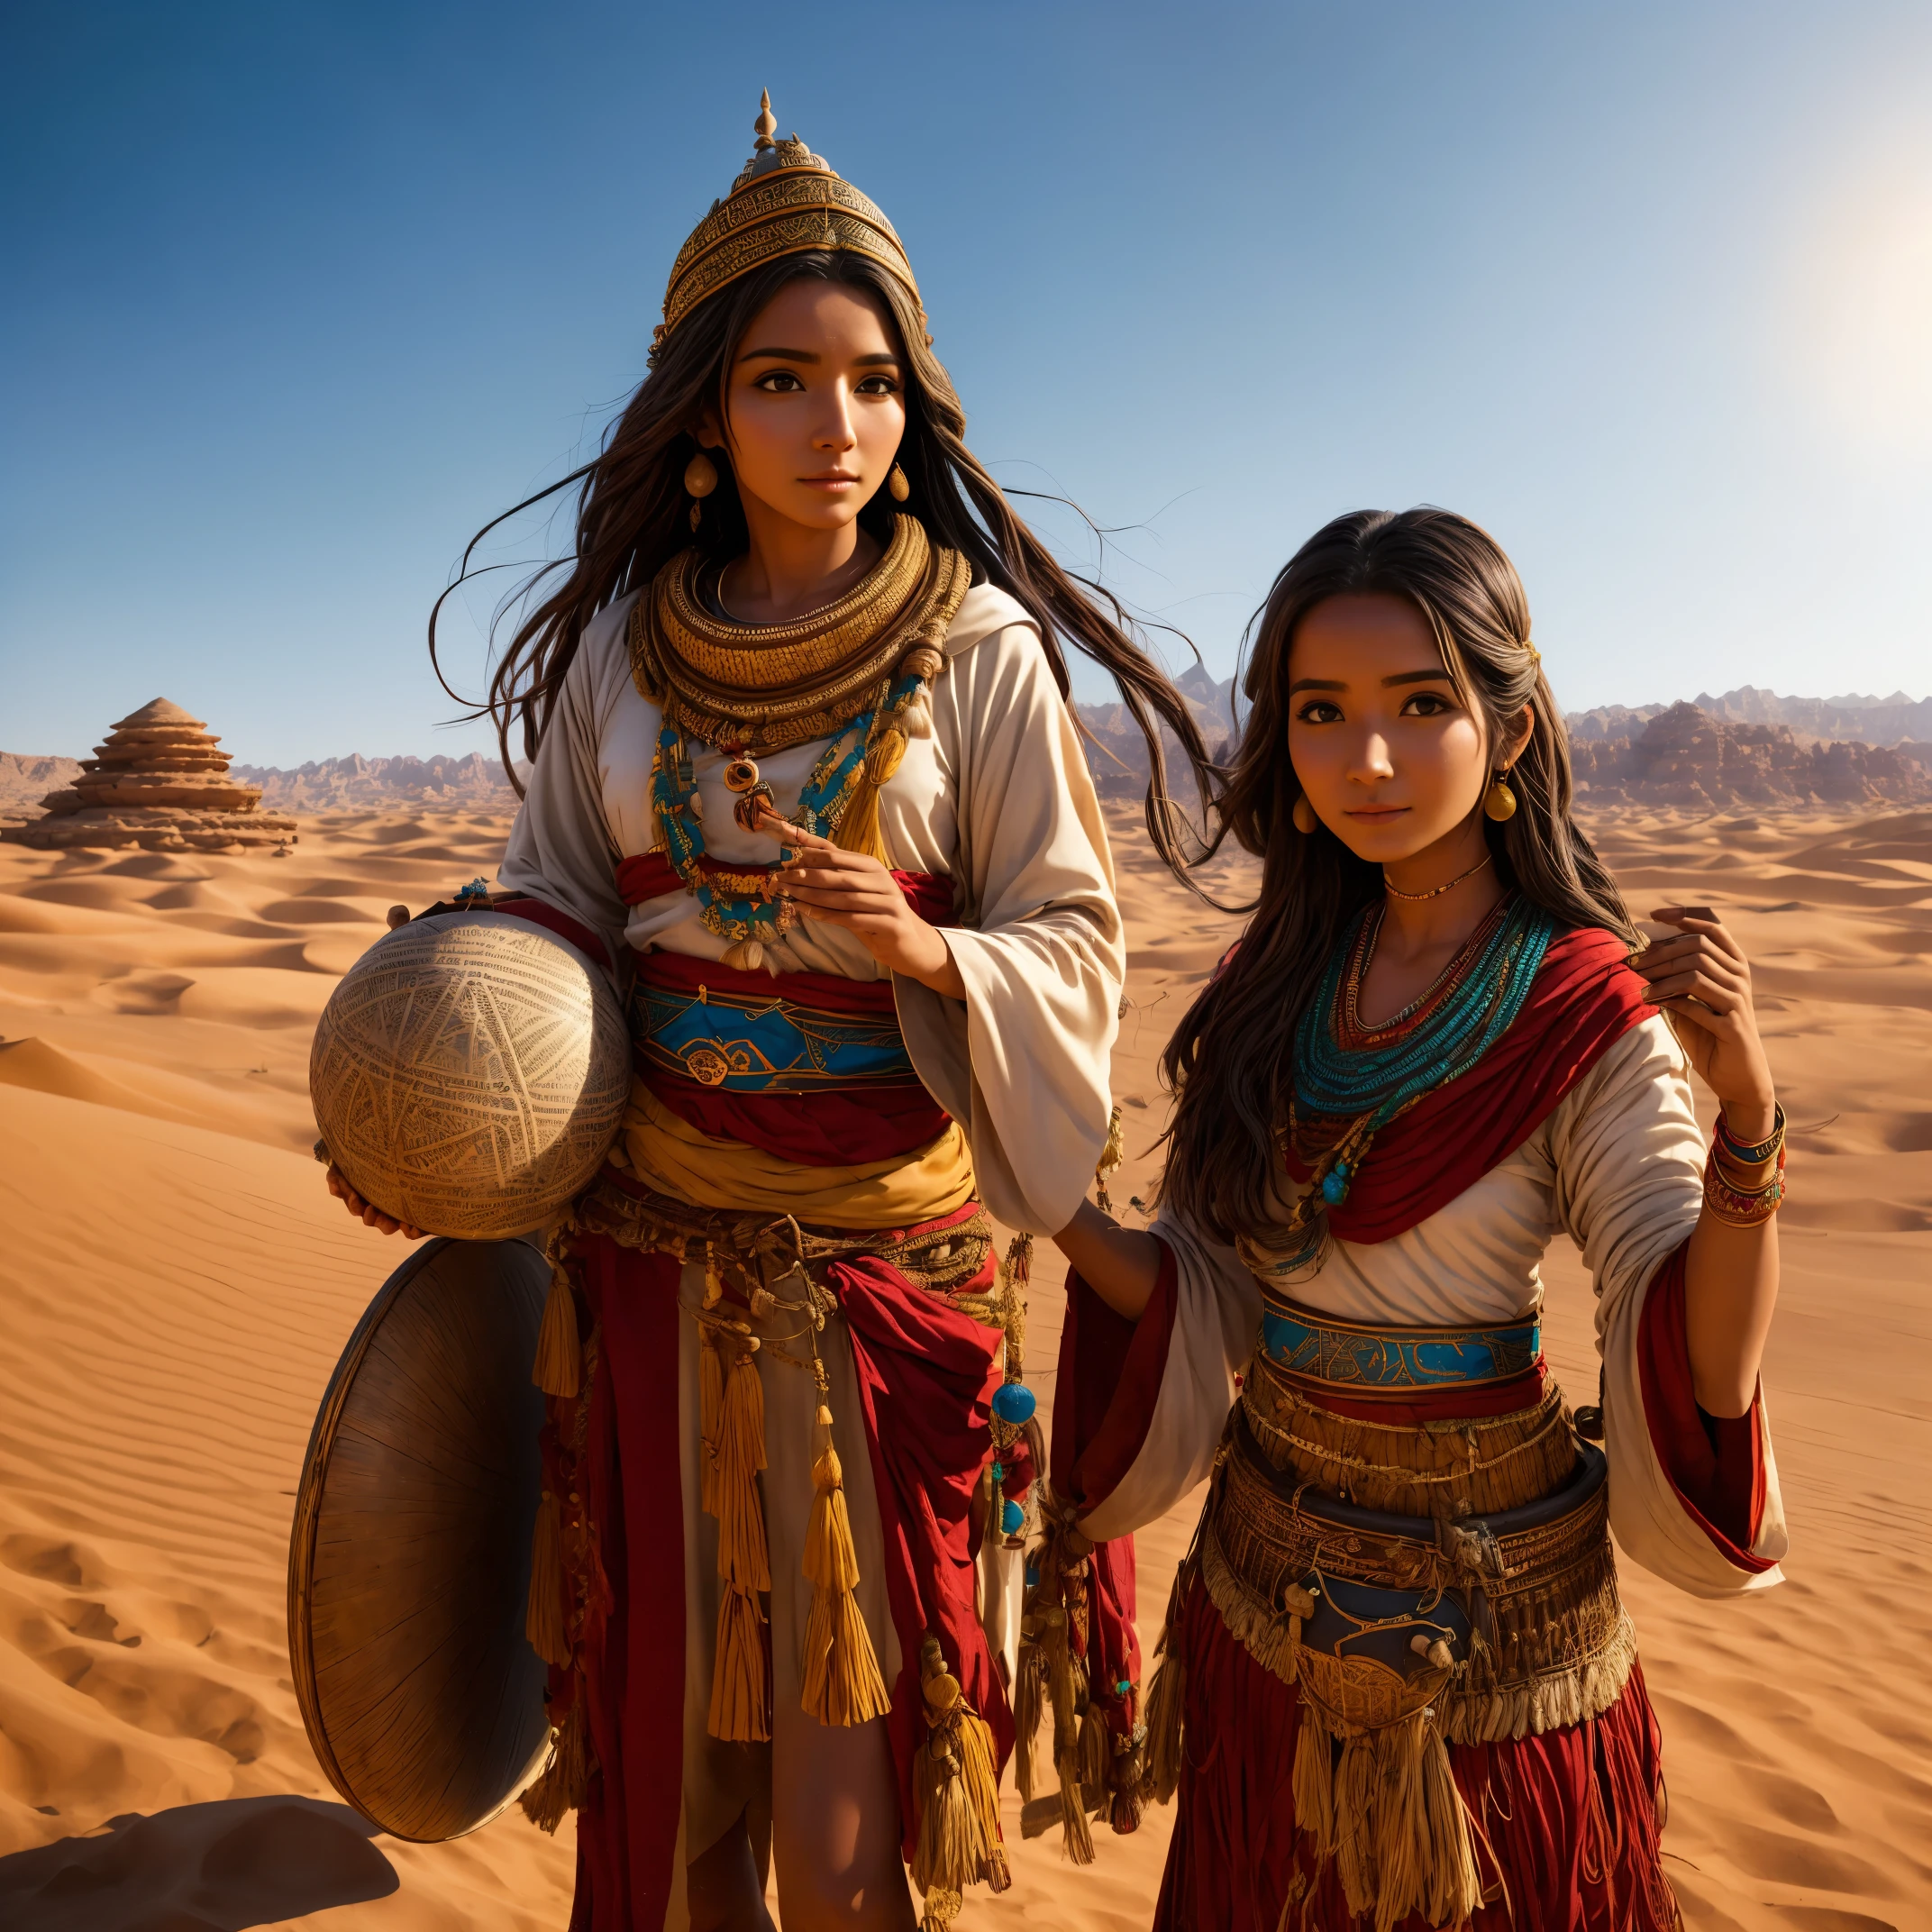 穿著傳統服裝的阿拉菲婦女在沙漠中拿著小鼓, 薩滿教服裝的年輕女子, 有球體的女孩, 電影「絲路」風景, 美麗的青春, 肖像拍攝, 古代麗芙公主, 沙漠的消失線在女人的腰下, 天空晴朗晴朗.  